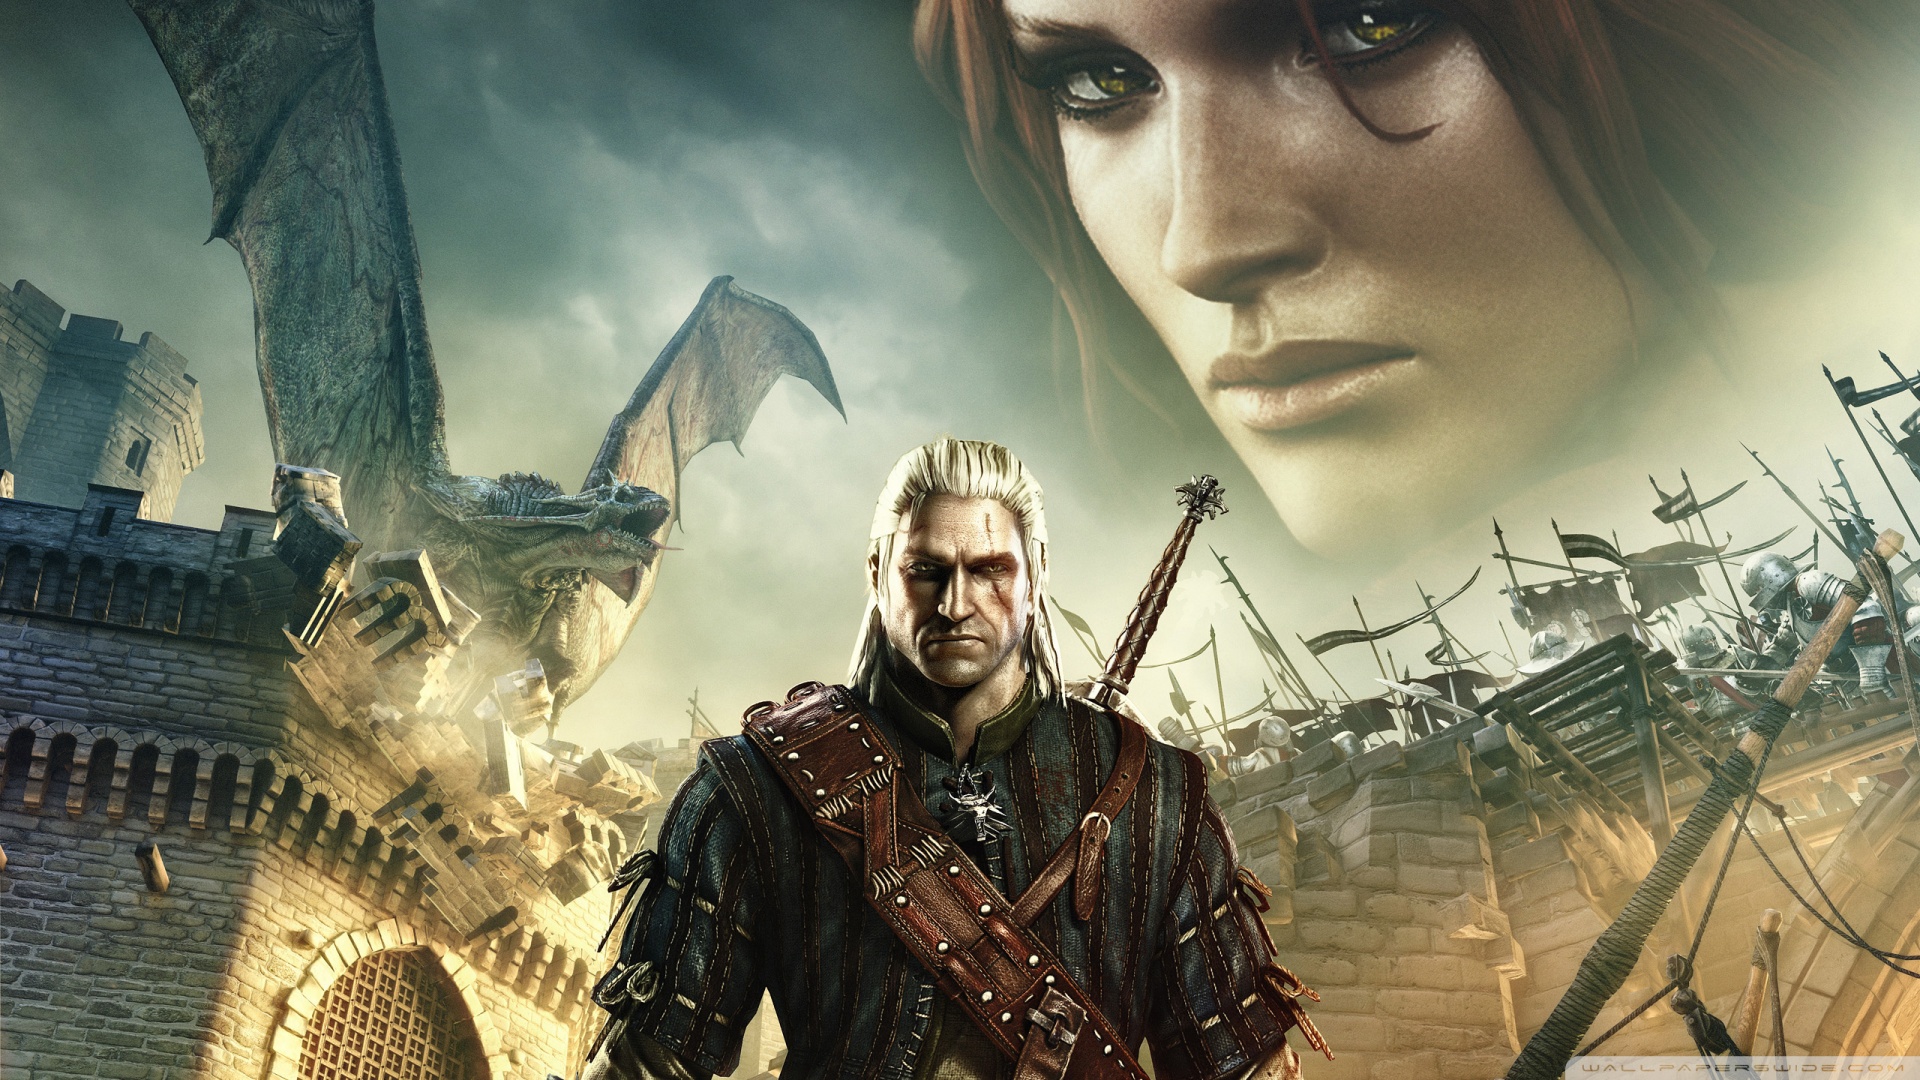 The Witcher 2 Assassins of Kings HD desktop wallpaper High resolution